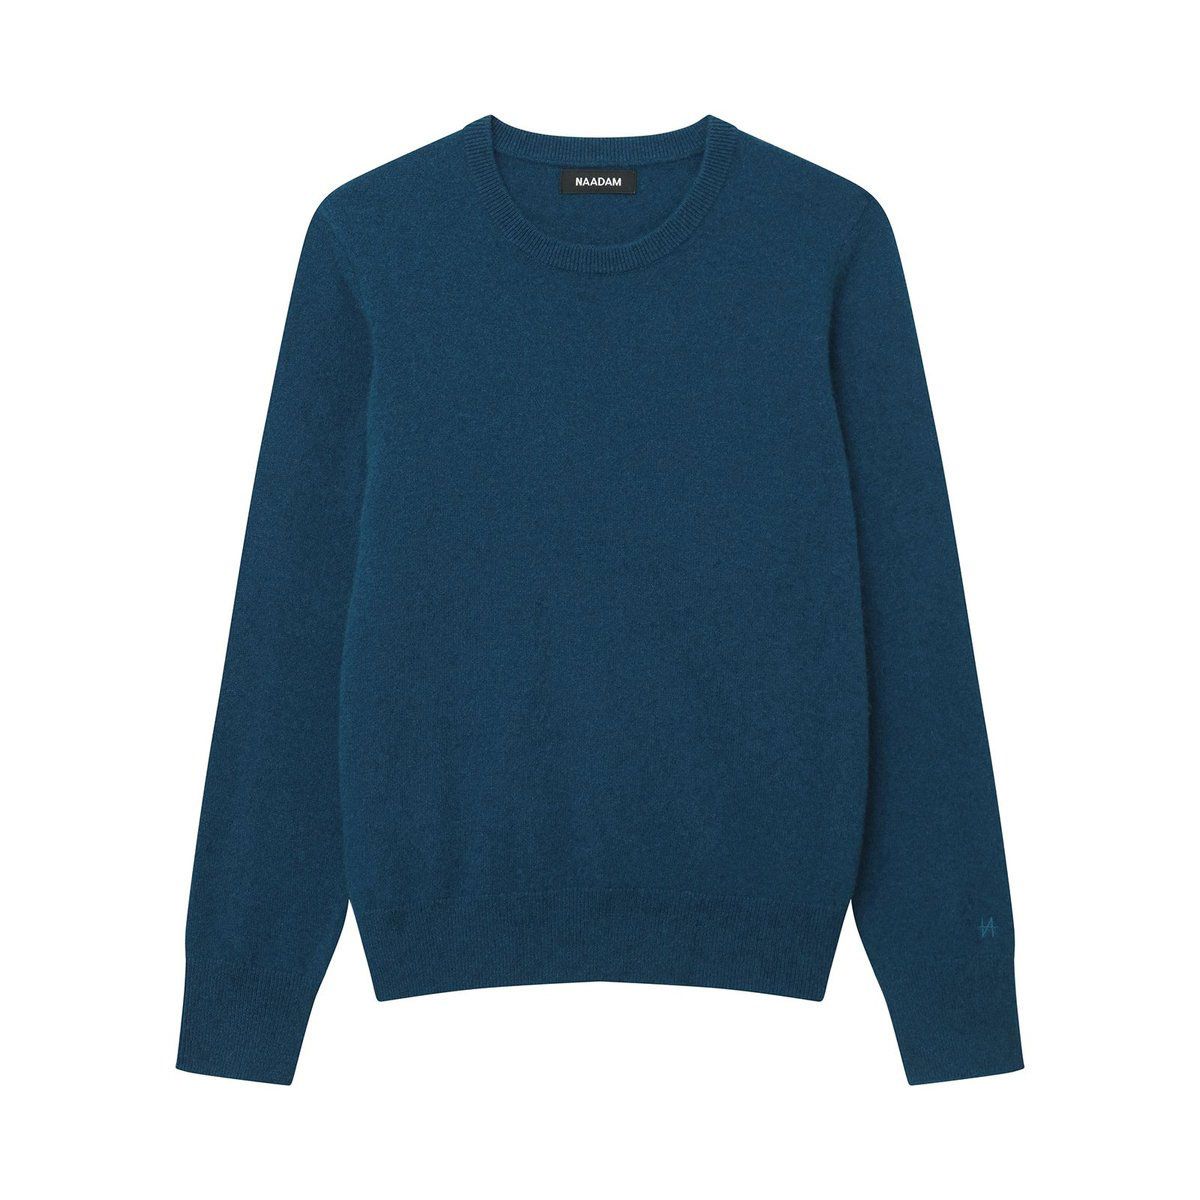 Bedste gaver, gaveideer til kvinder - For de budgetbevidste: Naadam Essential $ 75 Cashmere Sweater